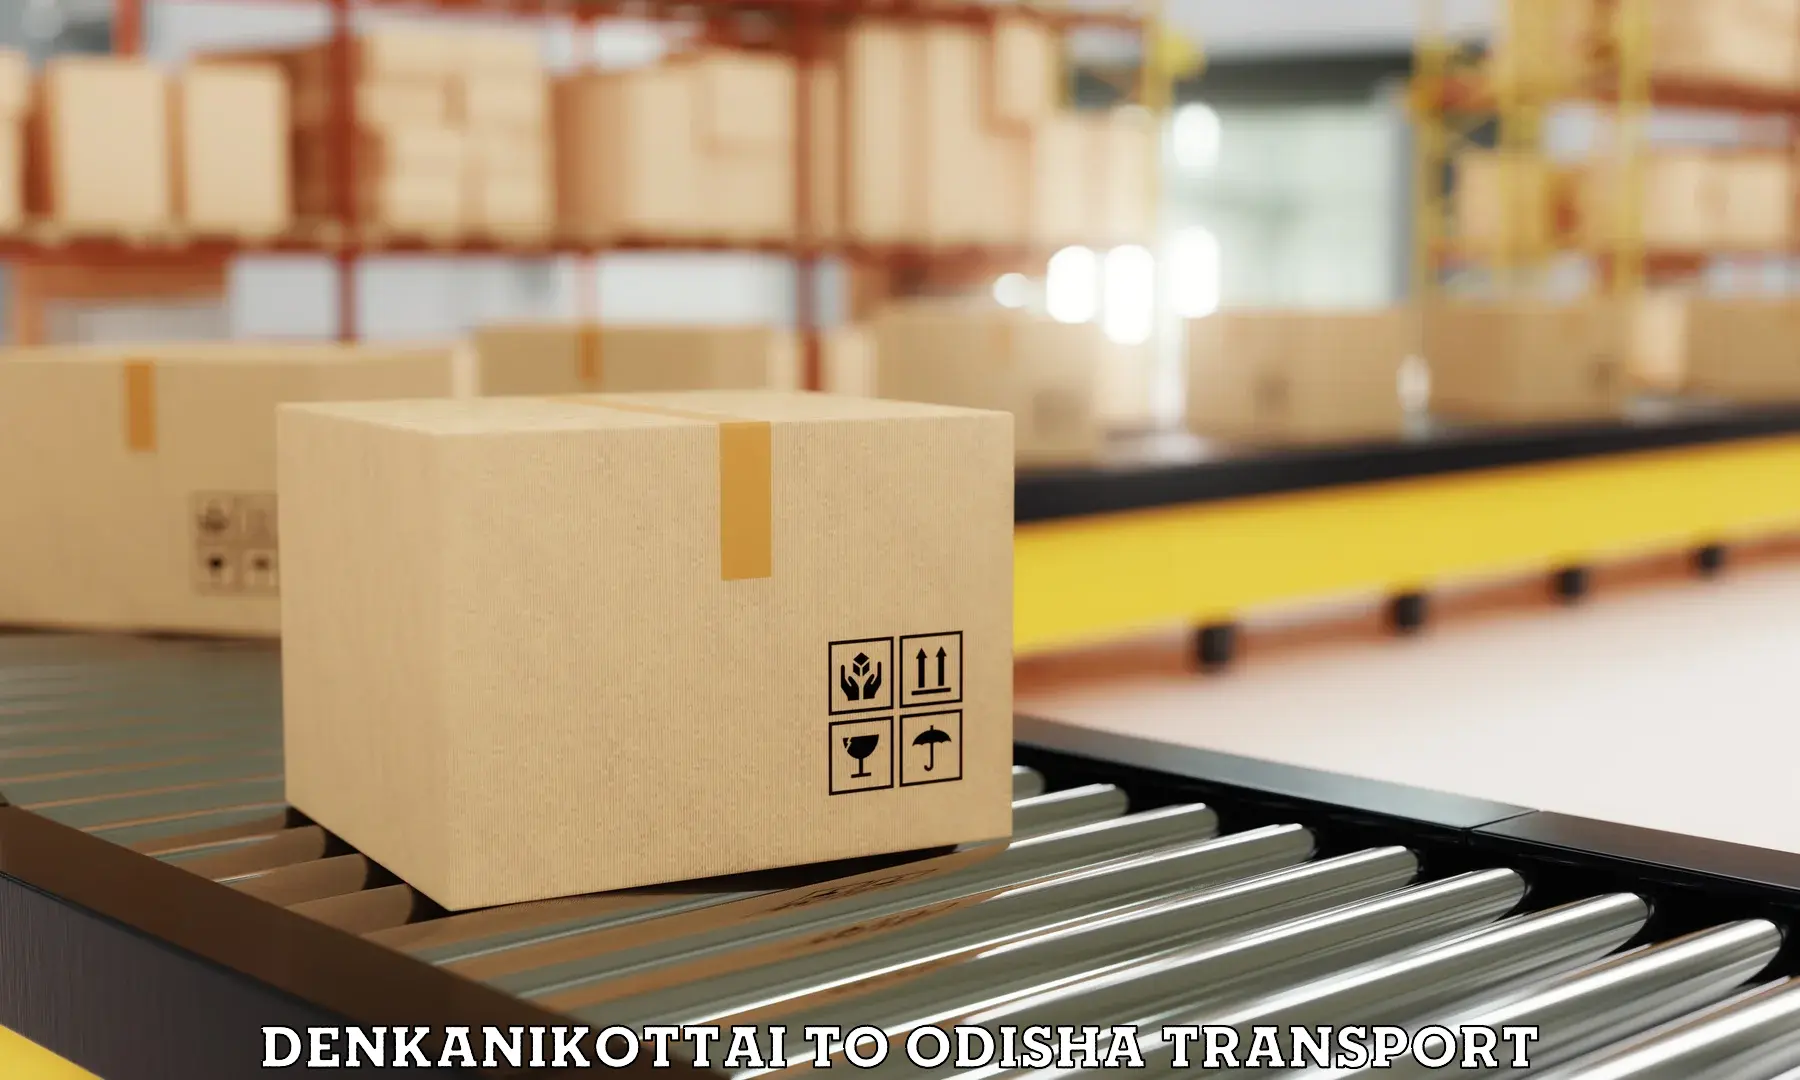 Online transport booking Denkanikottai to Chikiti